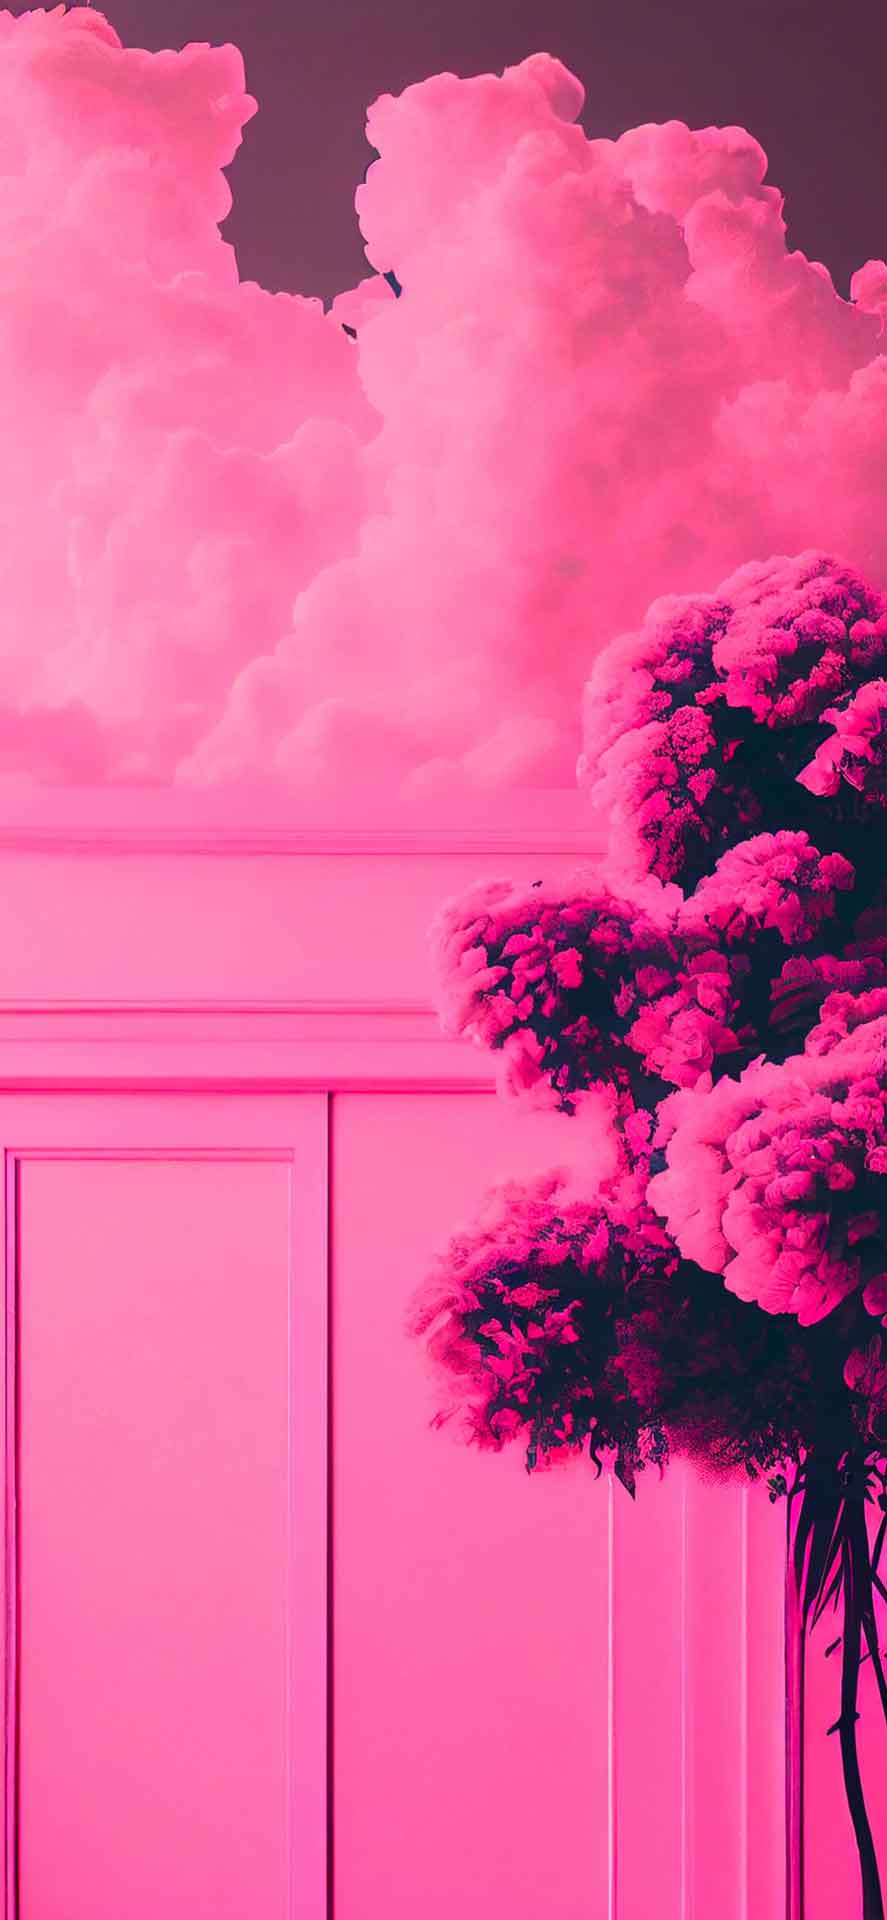 云朵、墙壁和树木美学粉红色壁纸